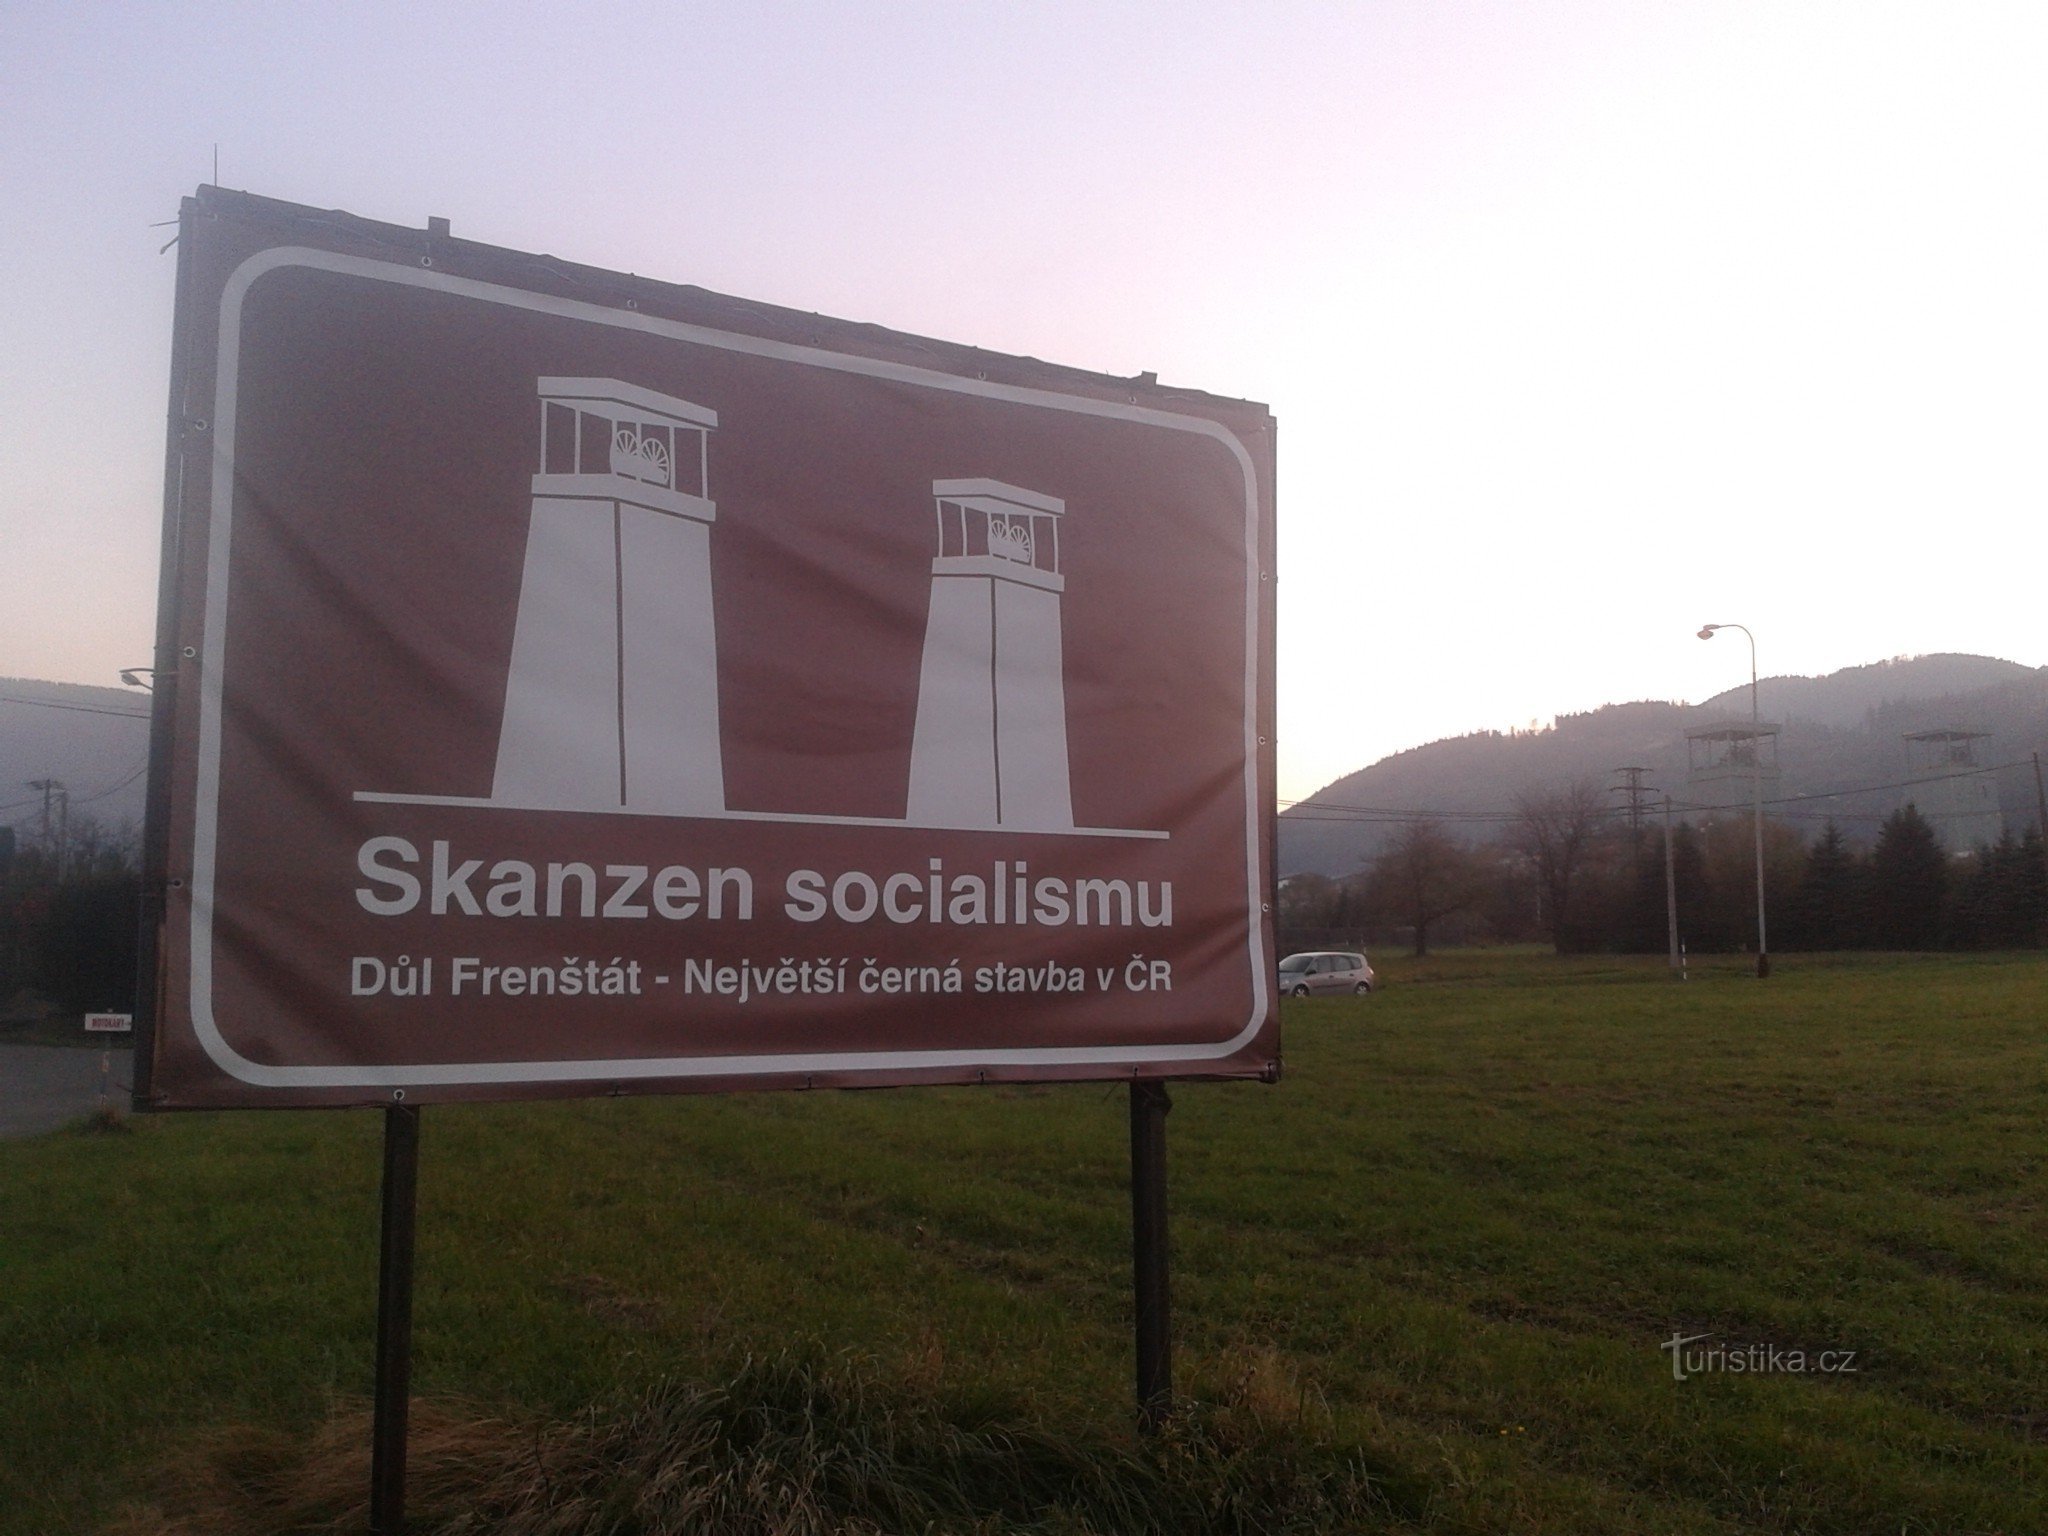 O maior museu socialista ao ar livre da República Tcheca